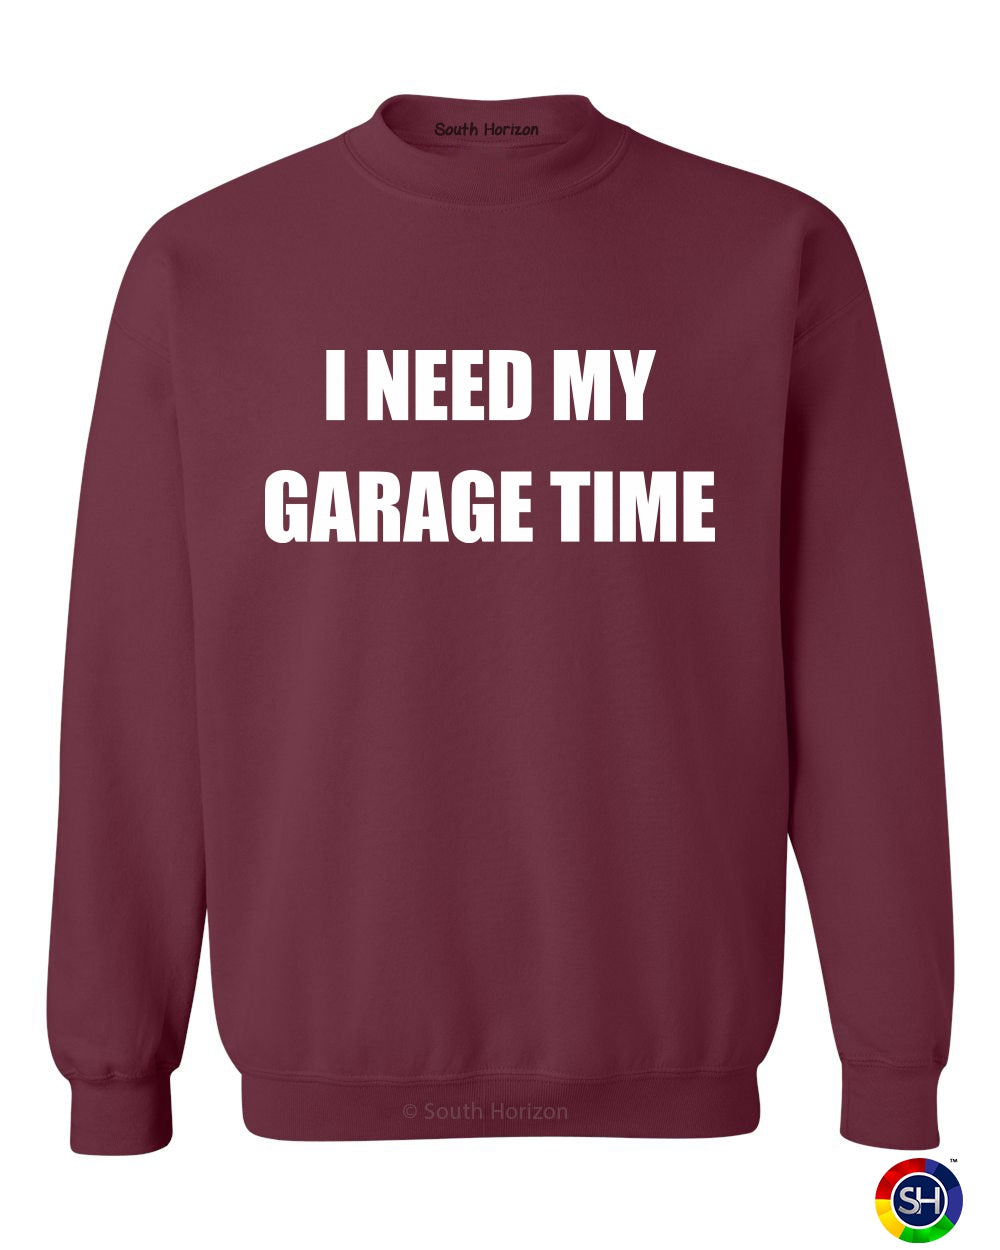 I NEED MY GARAGE TIME on SweatShirt (#720-11)